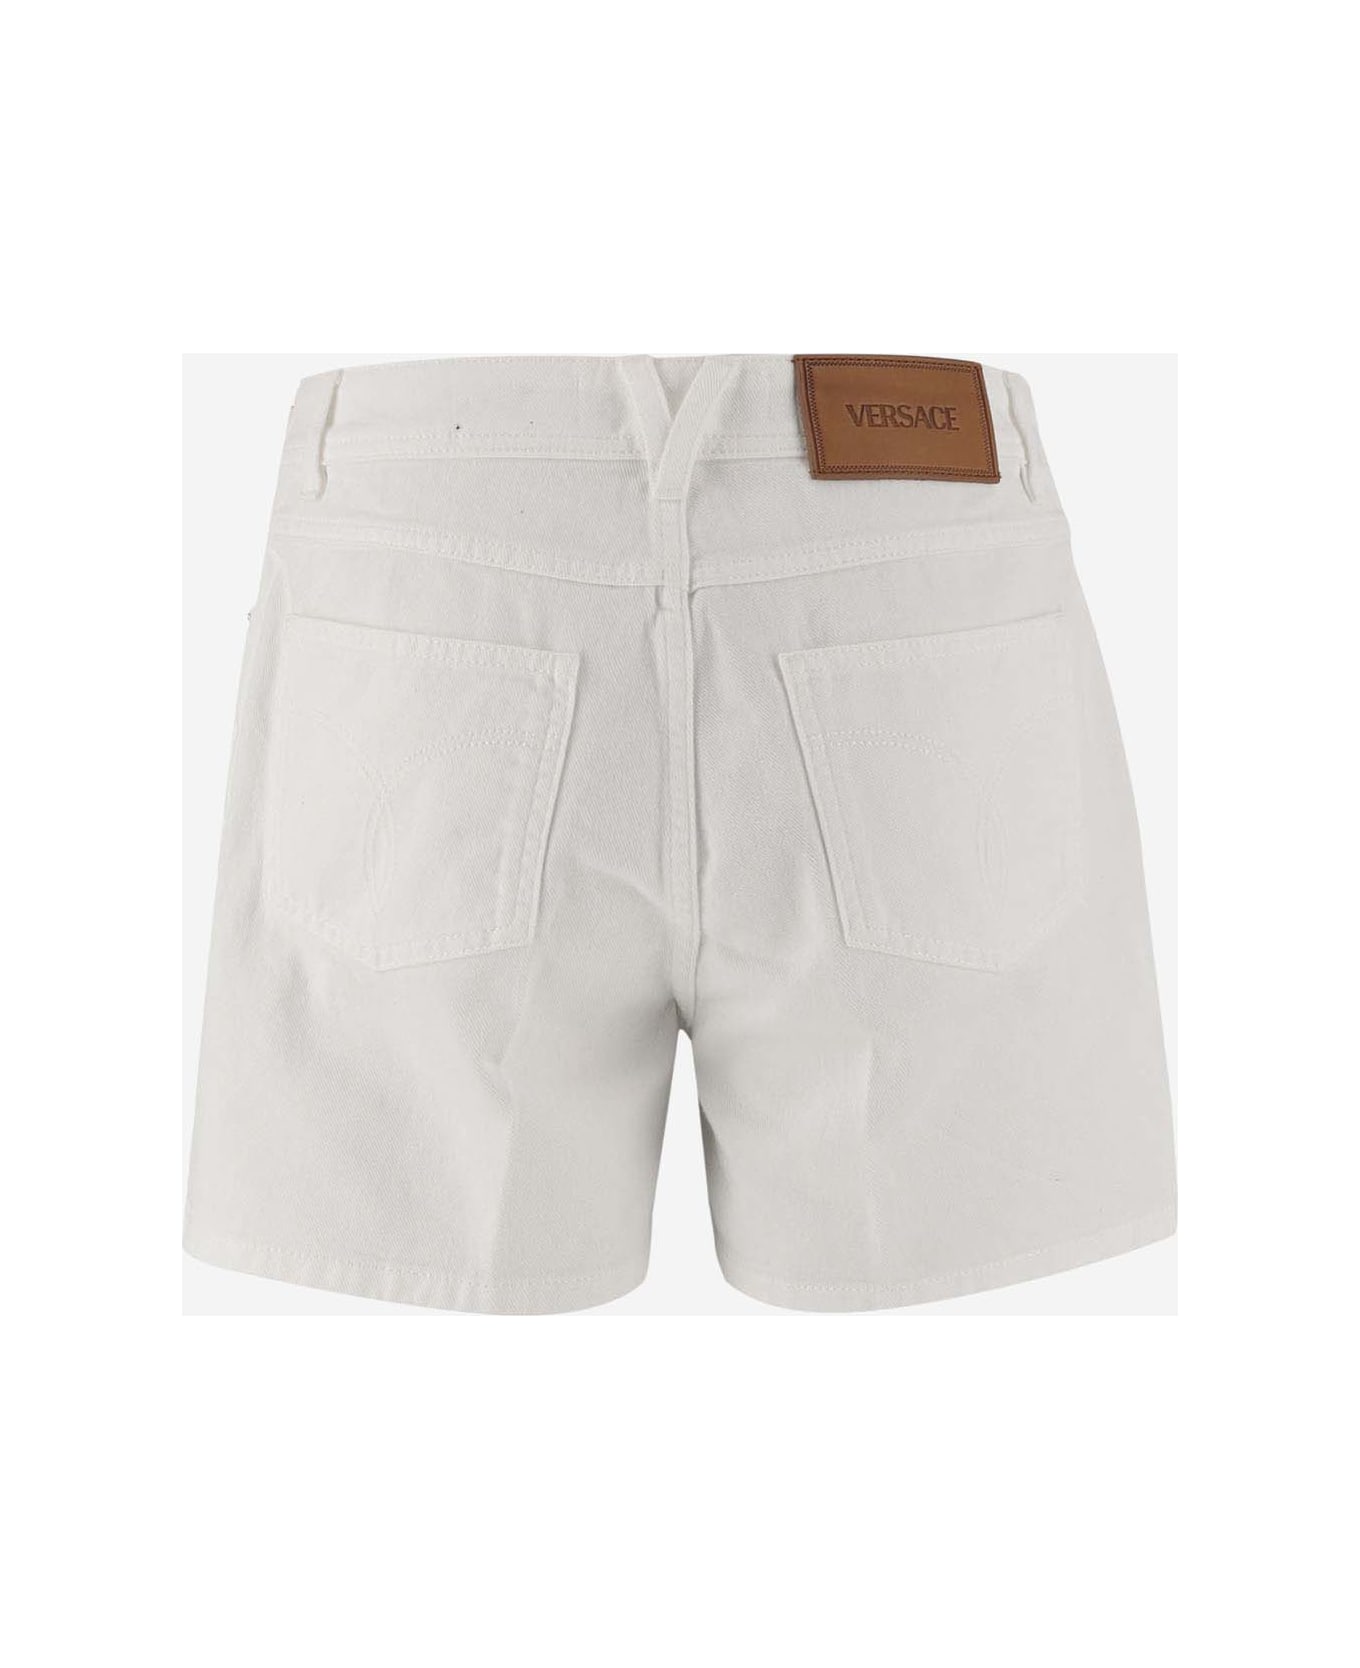 Versace Cotton Short Pants - White